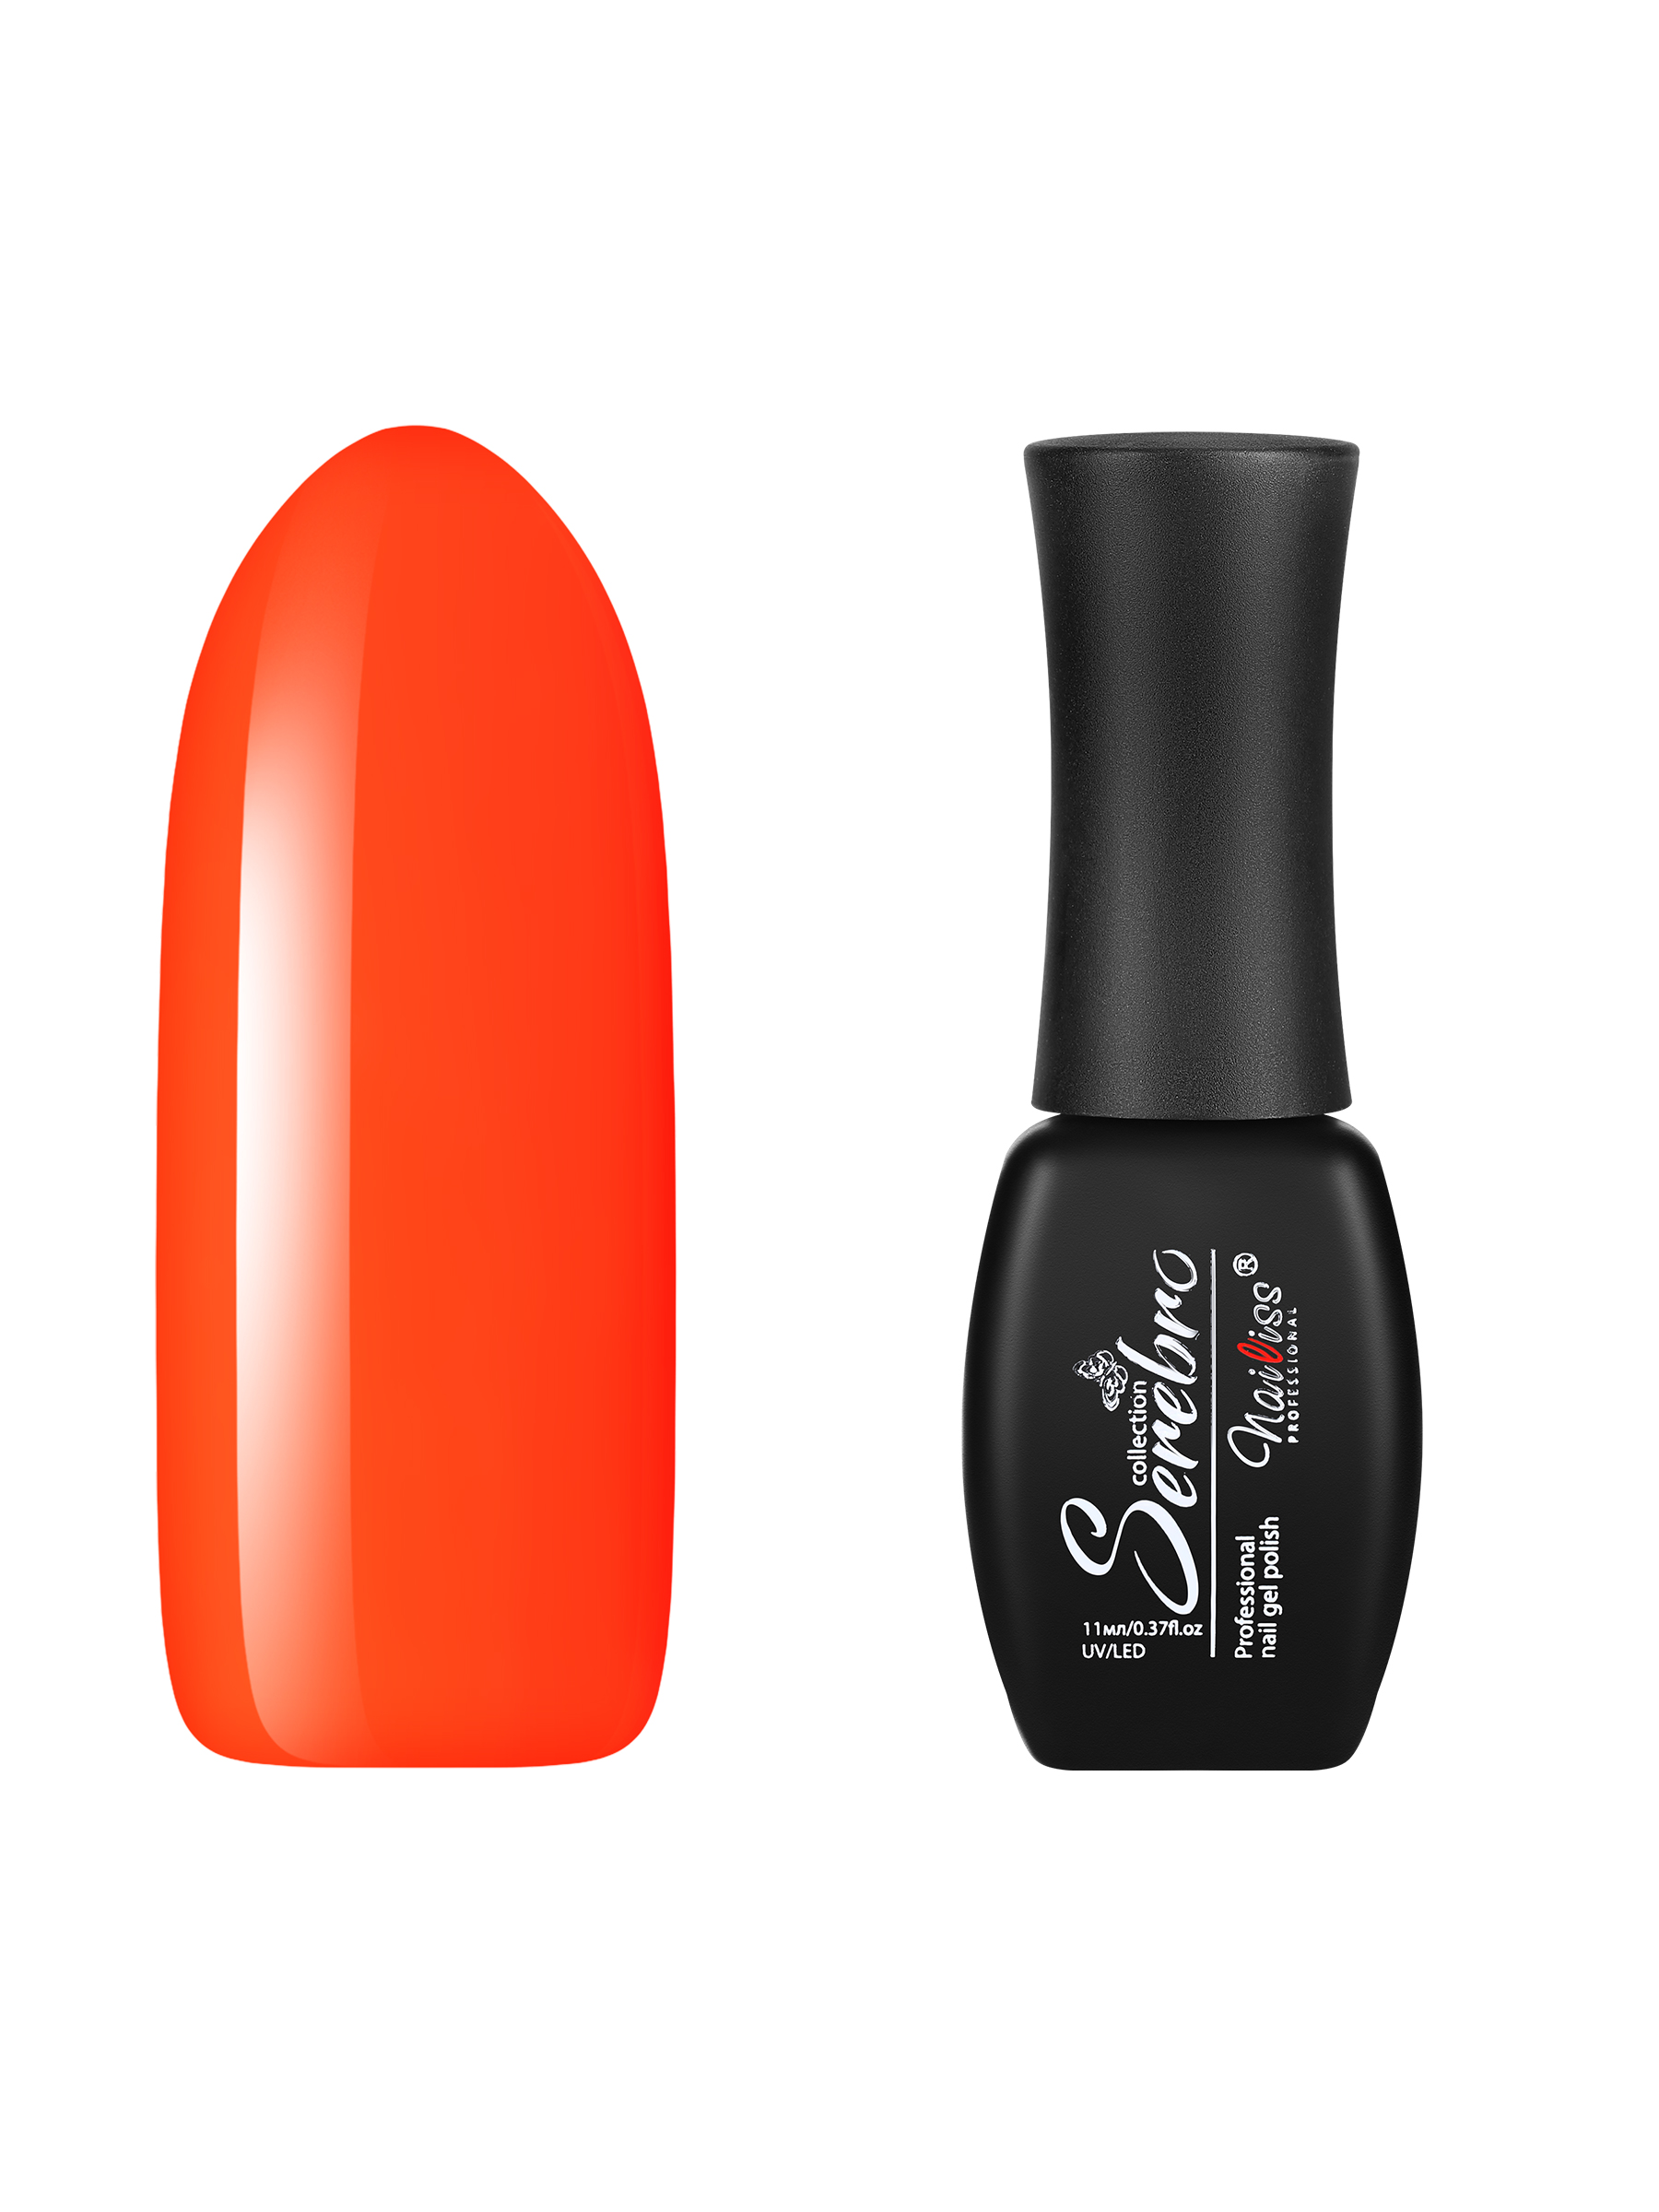 Гель-лак для ногтей Serebro, плотный цветной гипоаллергенный, насыщенный оранжевый, 11 мл ошейник дарэлл простой стандарт 1 слой безразмерный кожаный 30 ммх62 см оранжевый